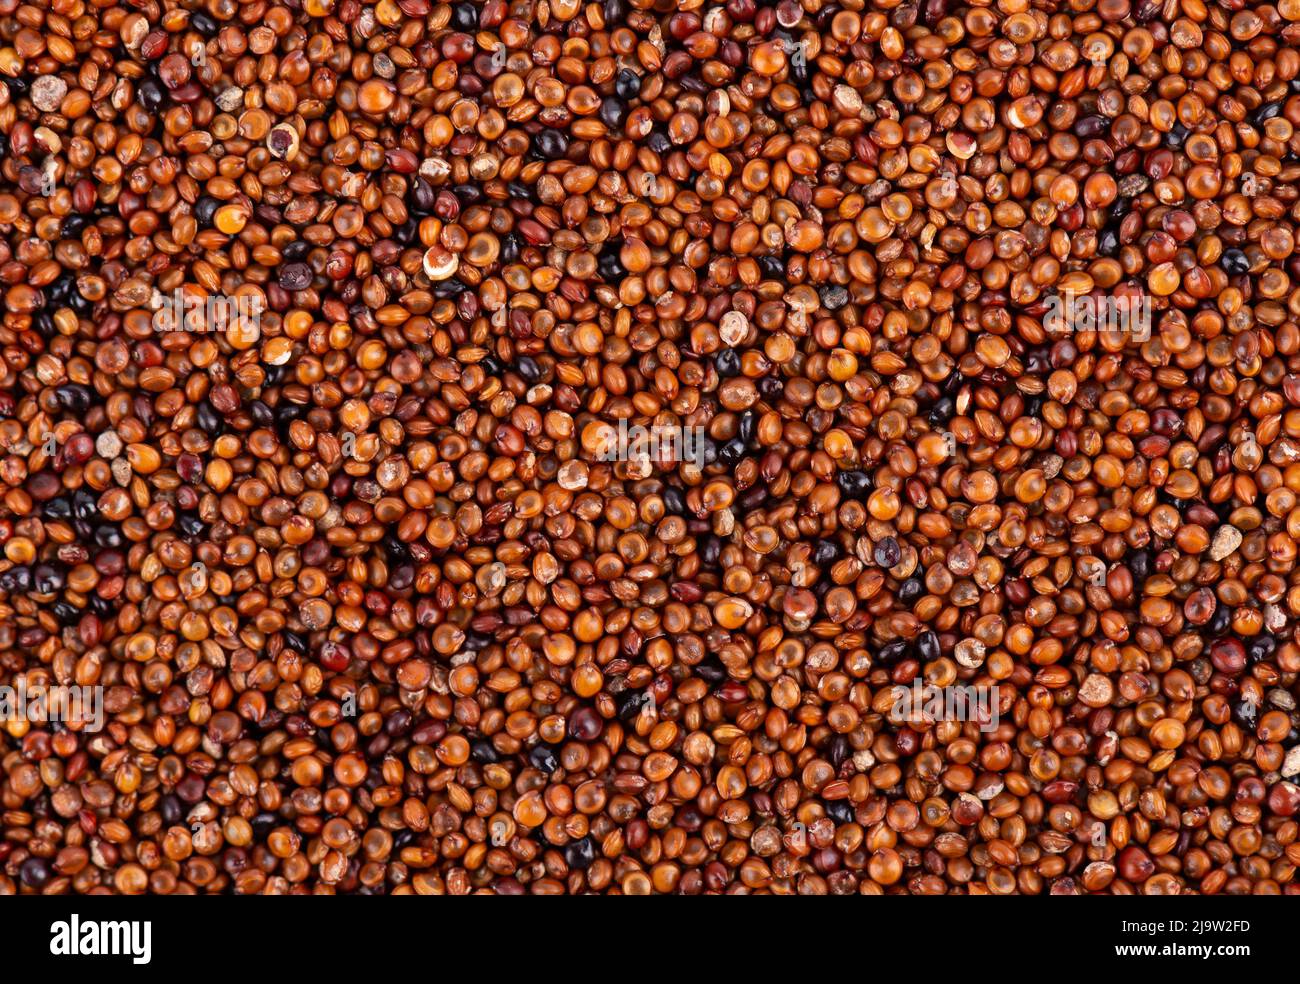 Canihua grains background. Qaniwa, qanawa, qanawi or kaniwa seeds. Dry grains of chenopodium pallidicaule. Top view Stock Photo